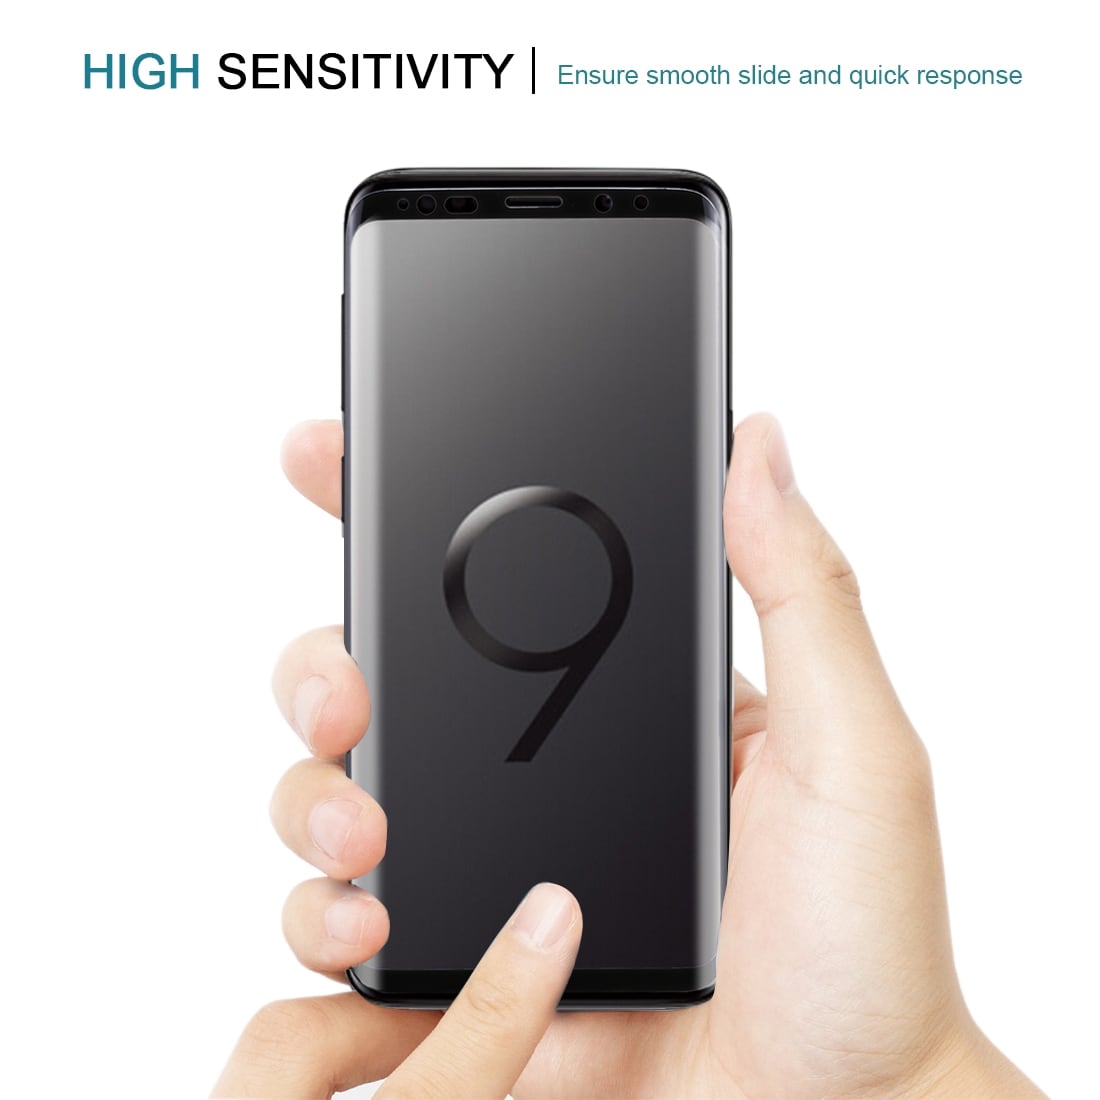 Böjt fullskärmskydd i härdat glas för Samsung Galaxy S9 – Svart